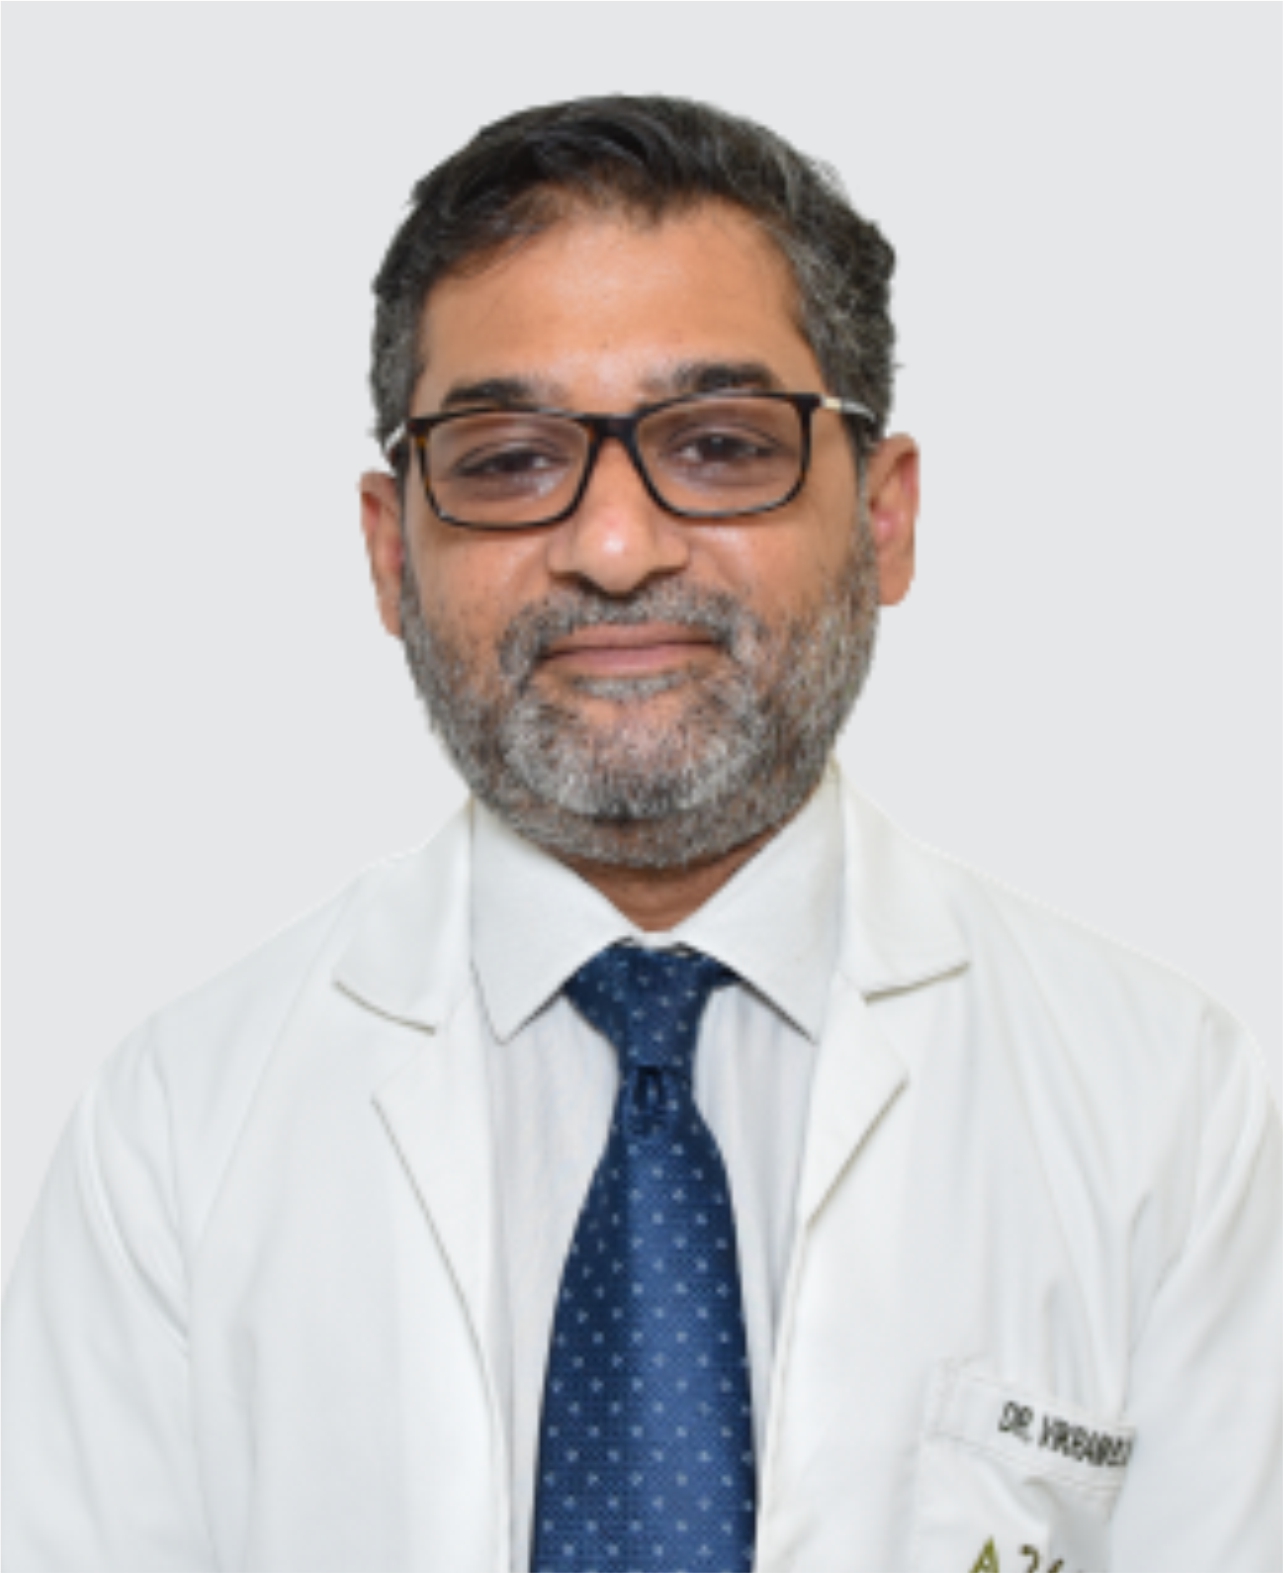 صورة الدكتور فيكرام باروا كوشيك، طبيب مسالك بولية في الهند